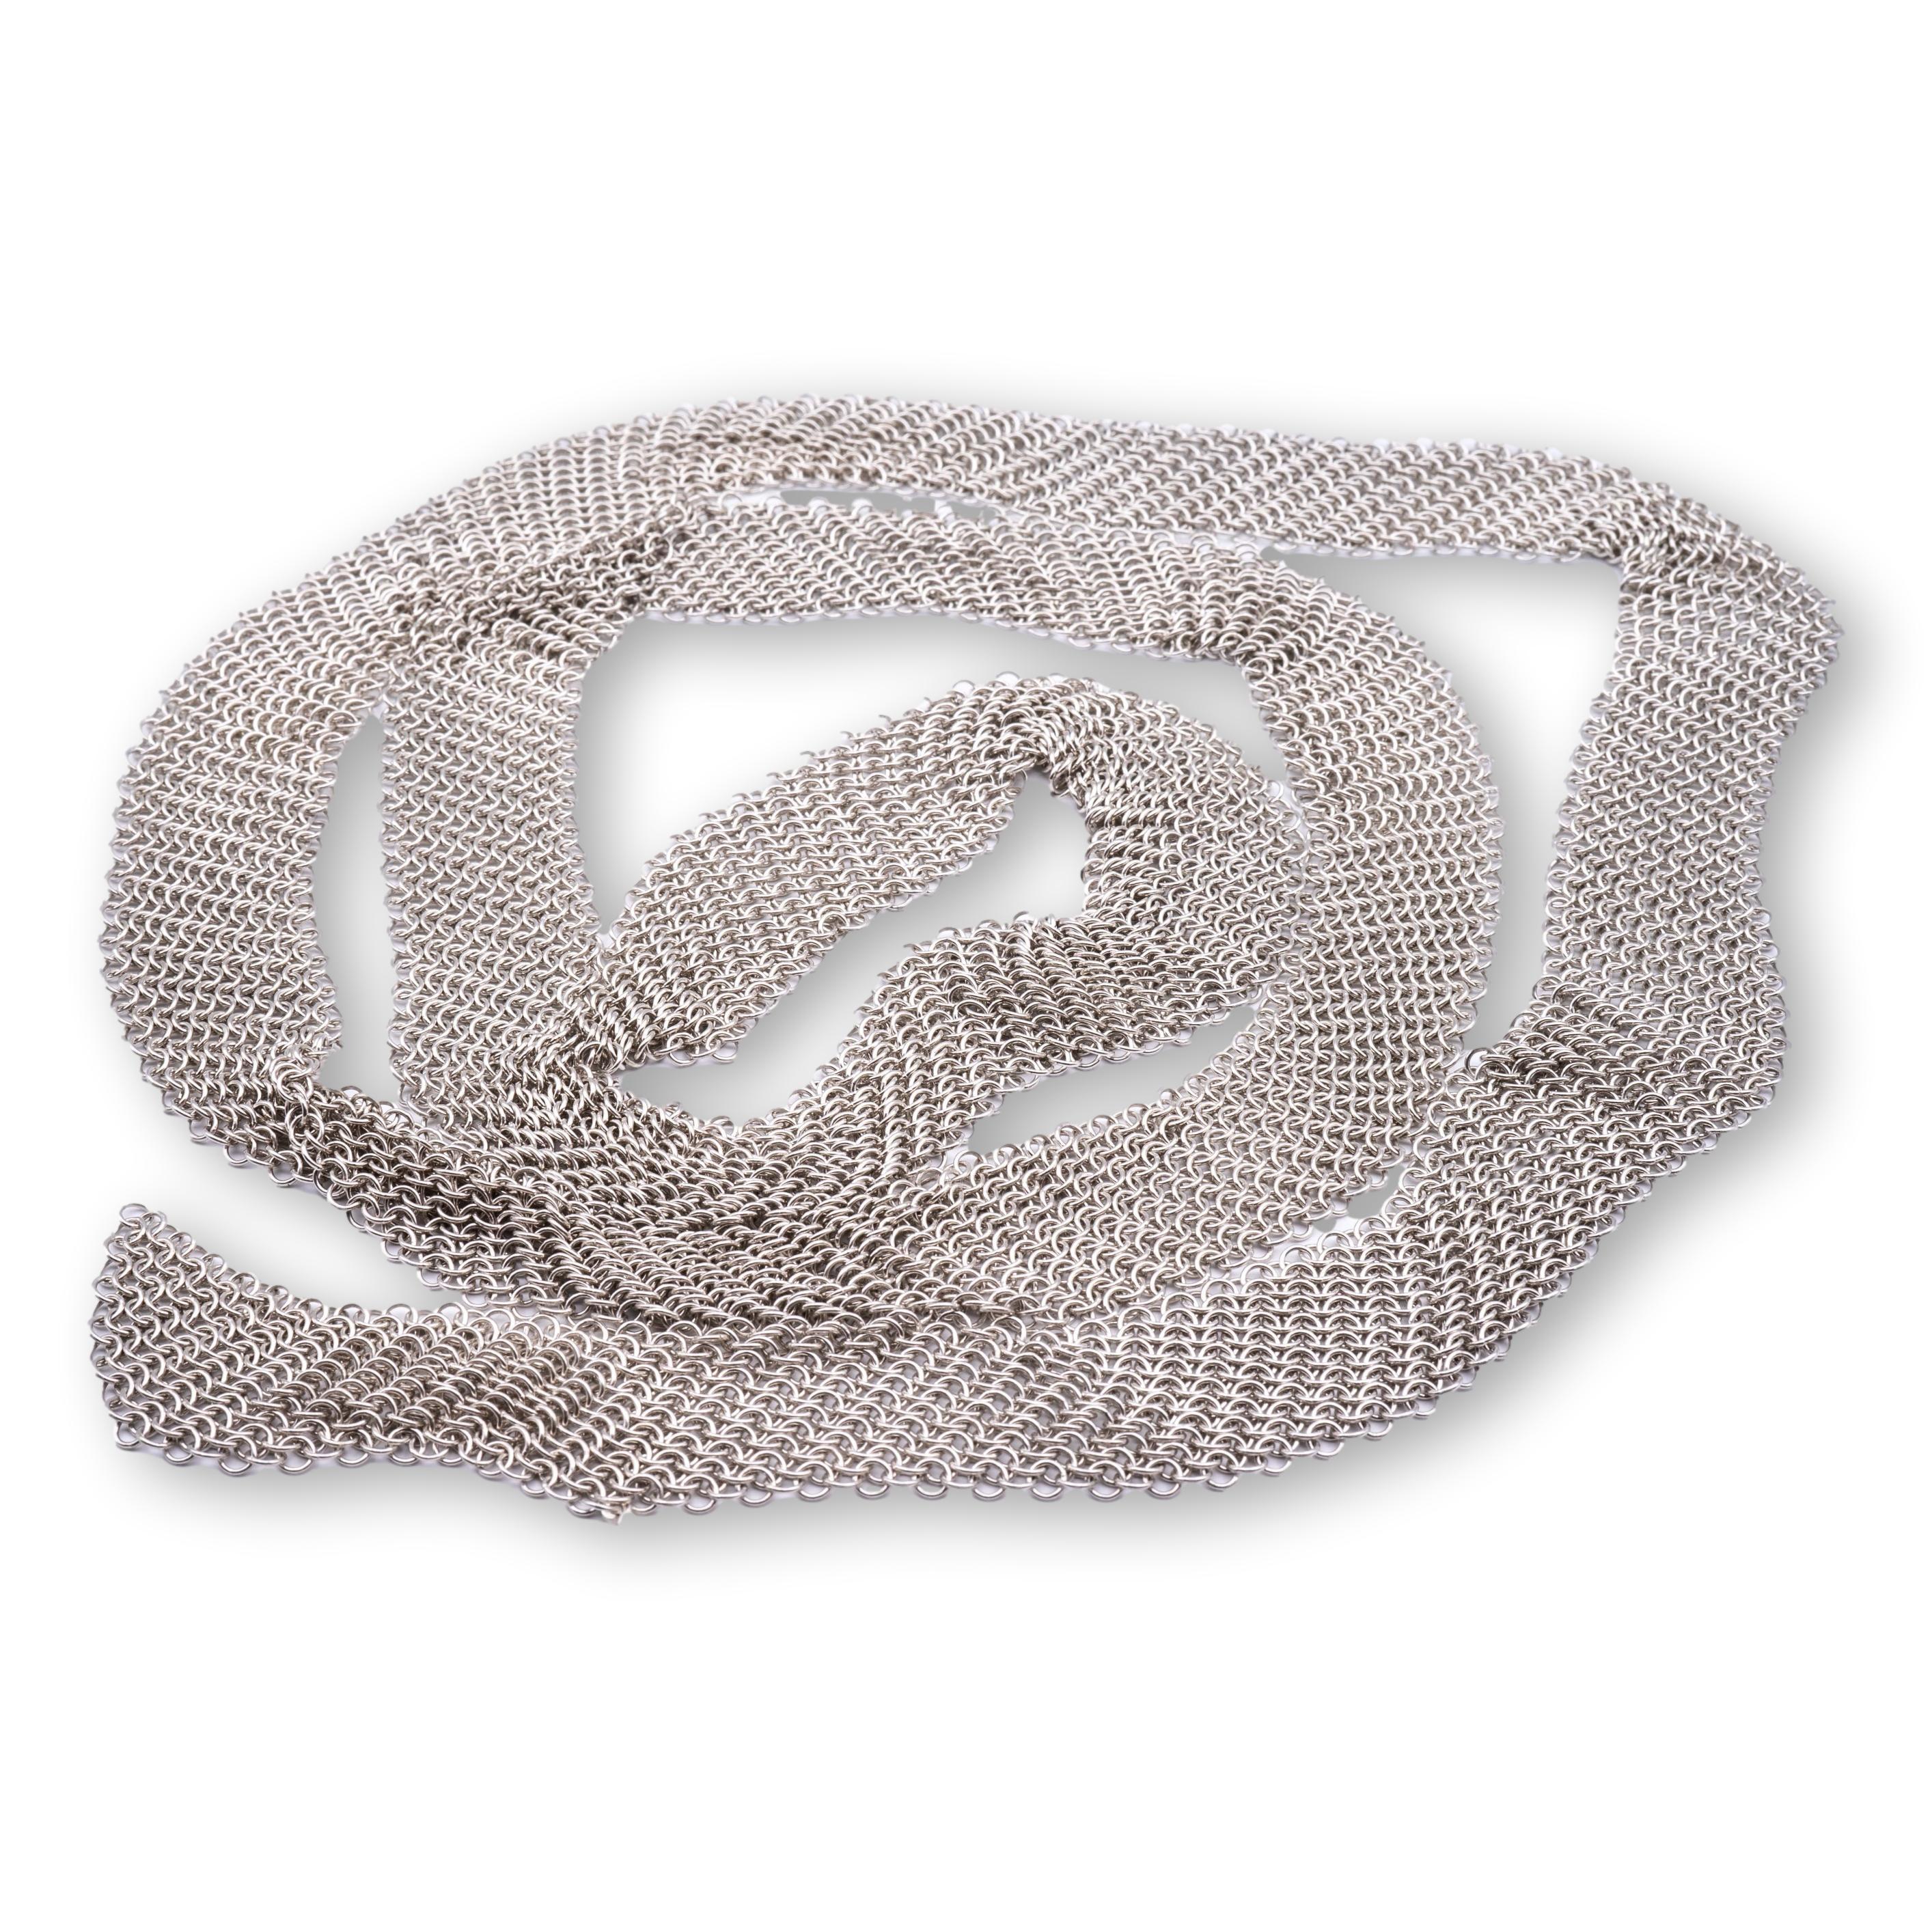 Tiffany & Co. Mesh Krawatte Schal / Halskette aus der Elsa Peretti Collection fein in Handarbeit in Sterling Silber mit einem gewebten Mesh-Kette Link-Design in der gesamten, Messung 49 